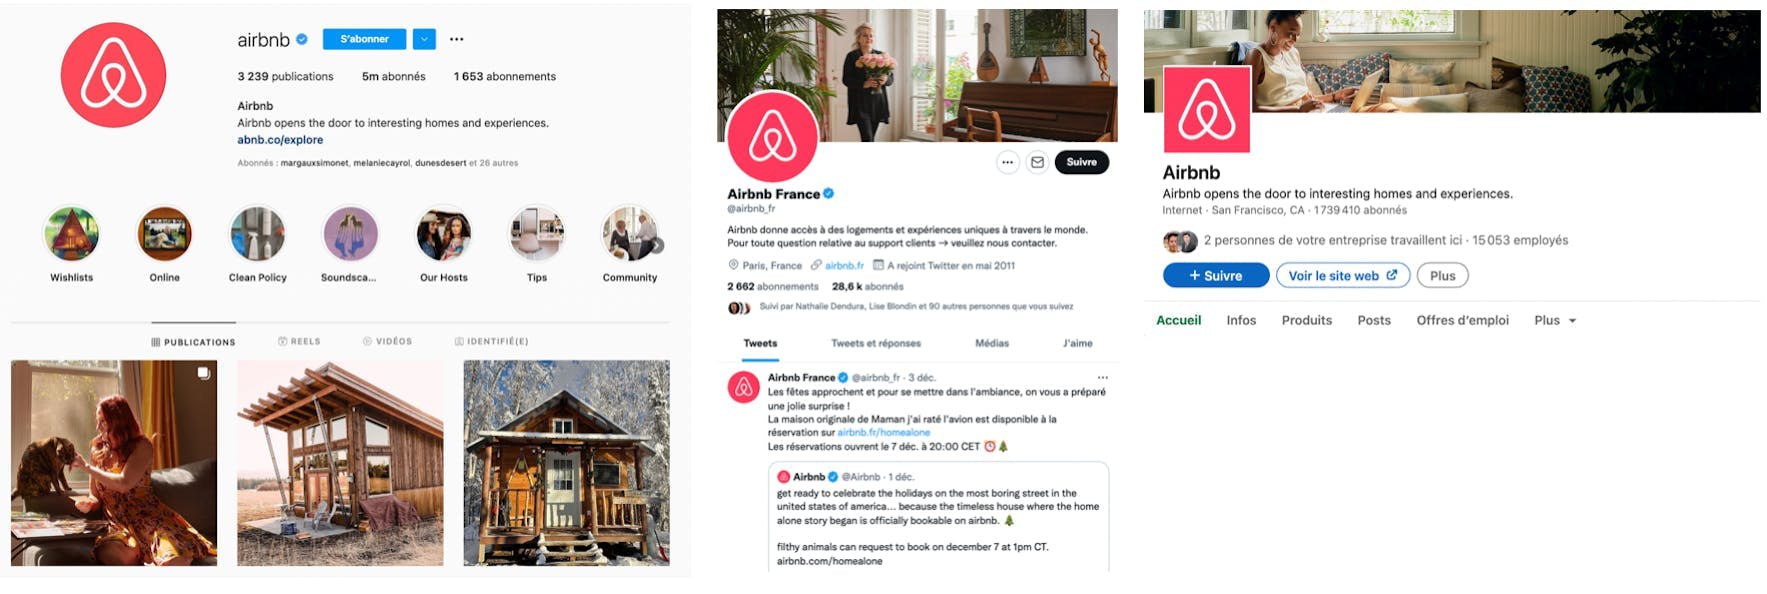 Visuel du logo Airbnb